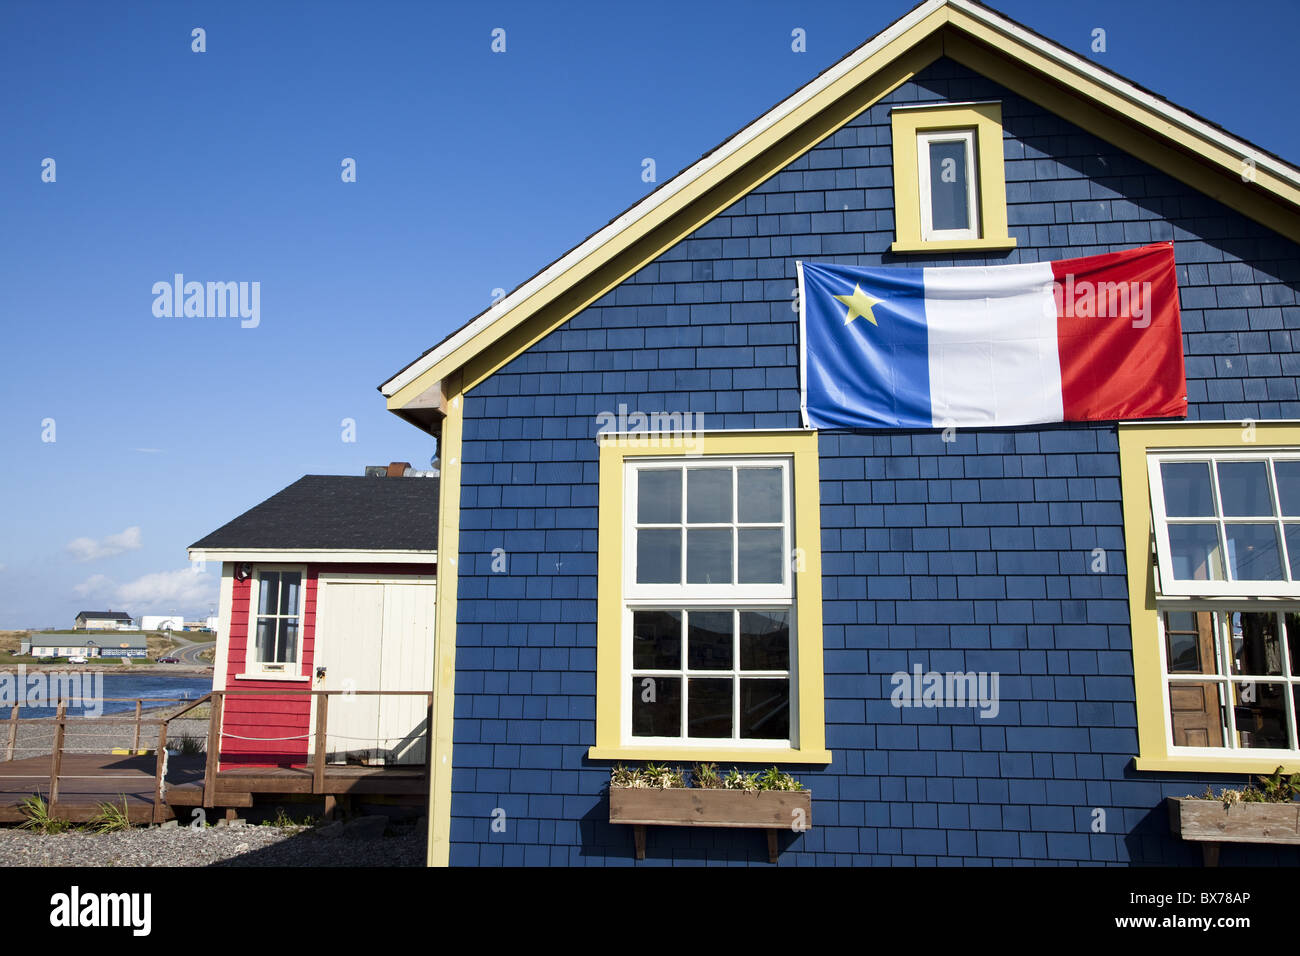 Drapeau acadien sur blue house dans La Grave, Ile Havre-Aubert, l'une des Iles de la Madeleine, golfe du Saint-Laurent, Québec, Canada Banque D'Images